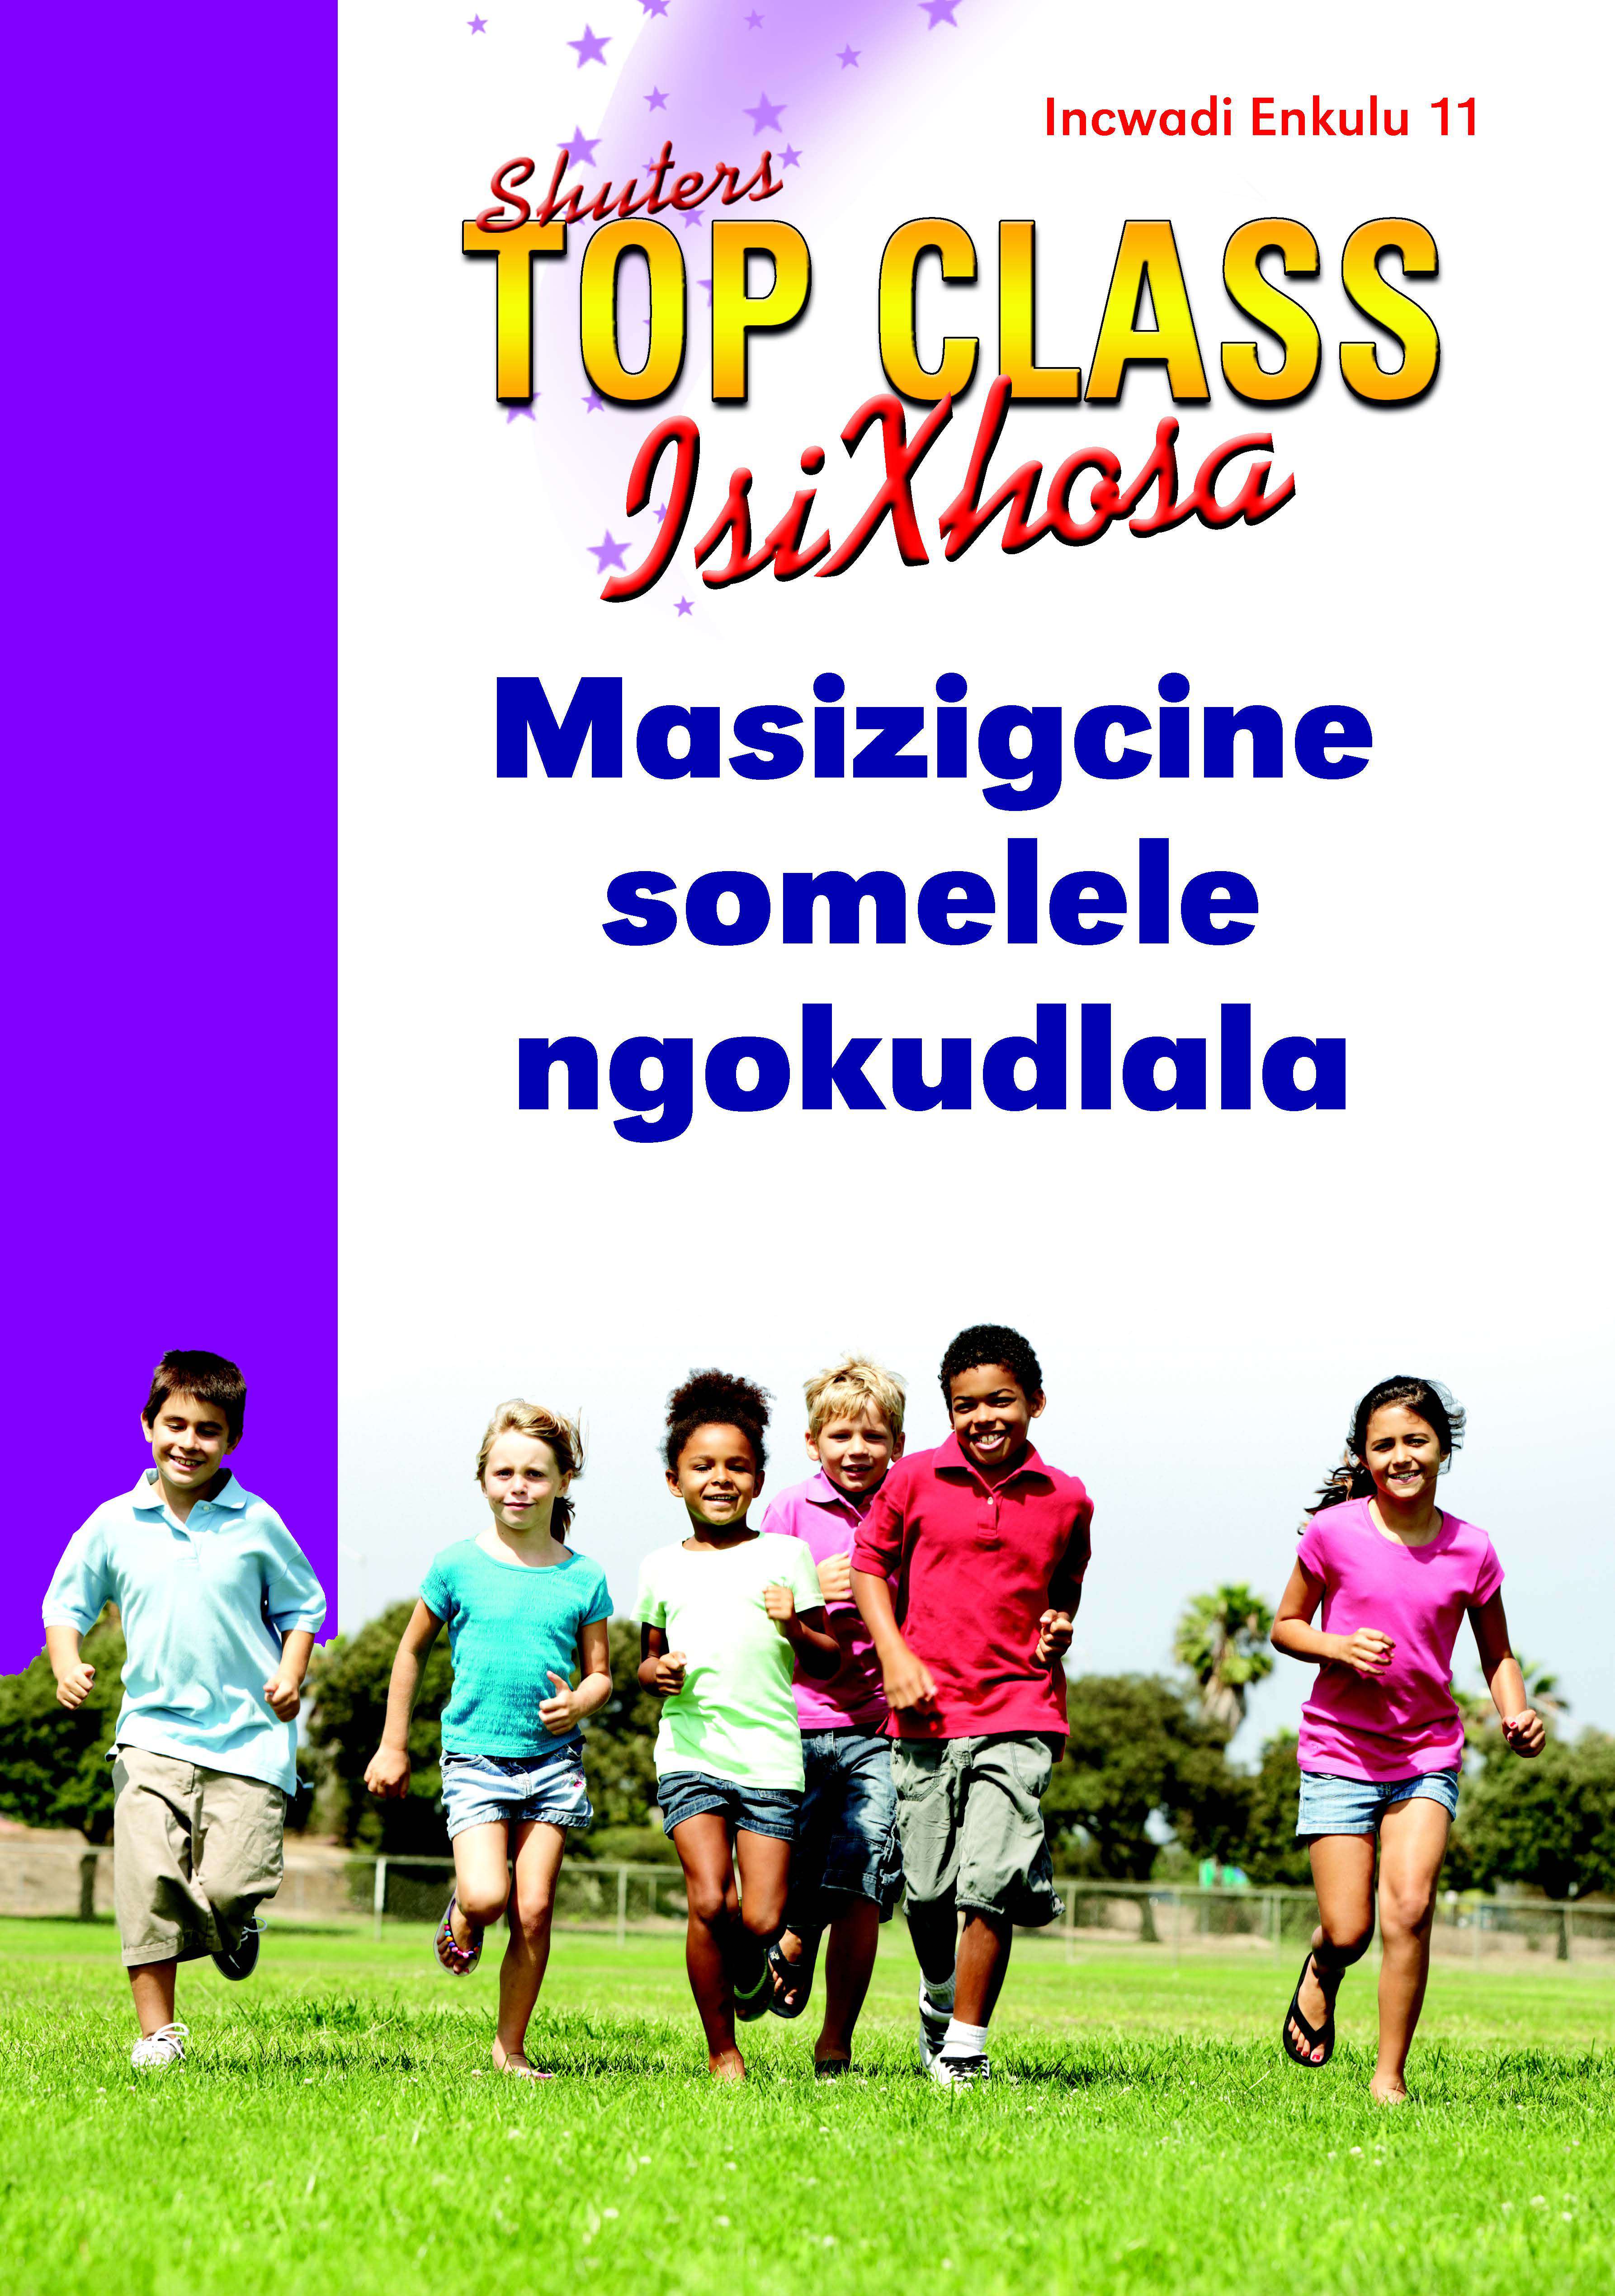 TOP CLASS ISIXHOSA FAL GRADE 2 BIG BOOK 11: MASIZIGCINE SOMELELE NGOKUDLALA Cover